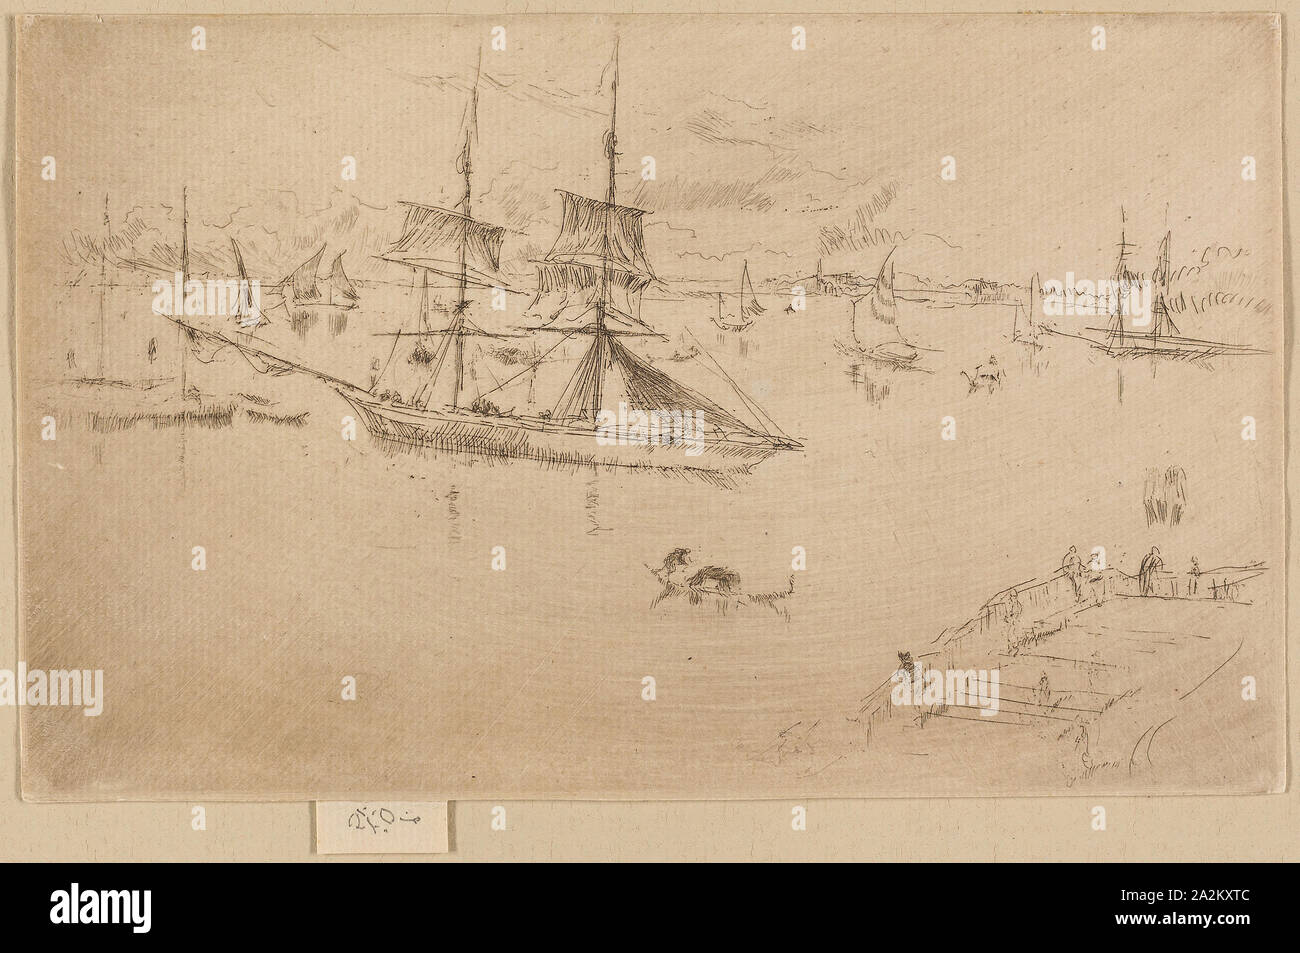 Lagoon-midi, 1879/80, James McNeill Whistler, Américain, 1834-1903, United States, pointe sèche en brun foncé sur papier vergé ivoire, 125 x 202 mm (feuille Banque D'Images